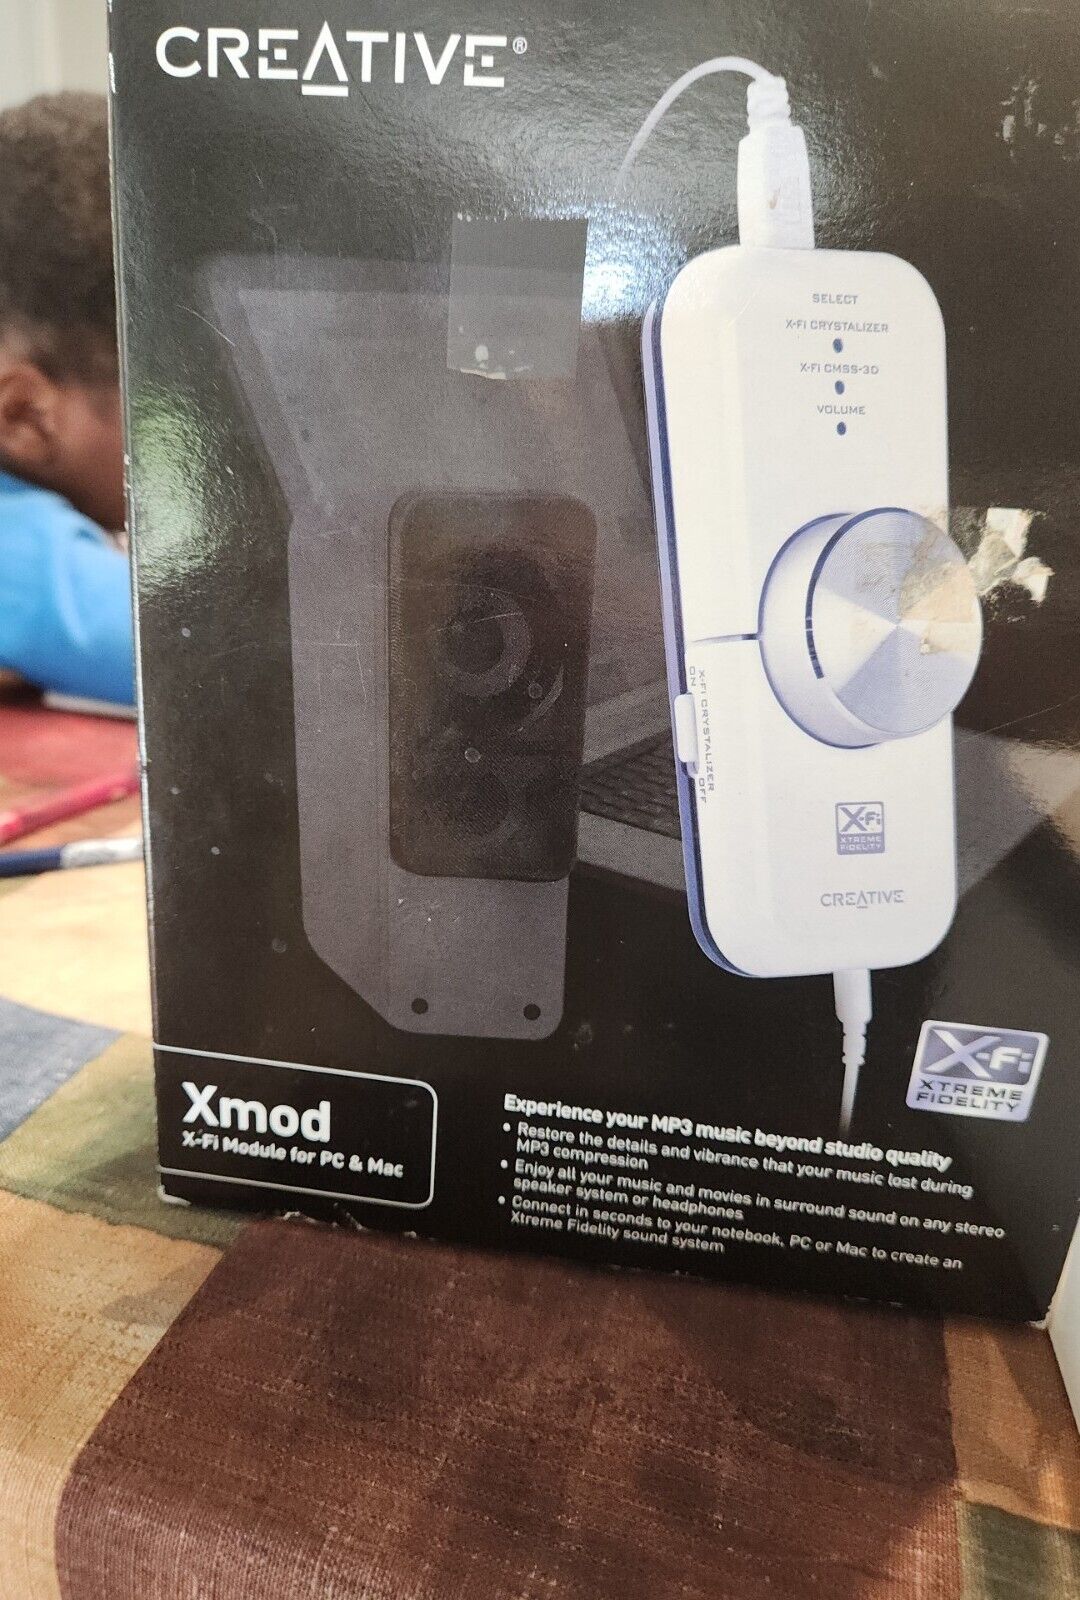 Creative X-Fi Module For Pc & Mac Xtreme Fidelity USB Sound Card XMOD